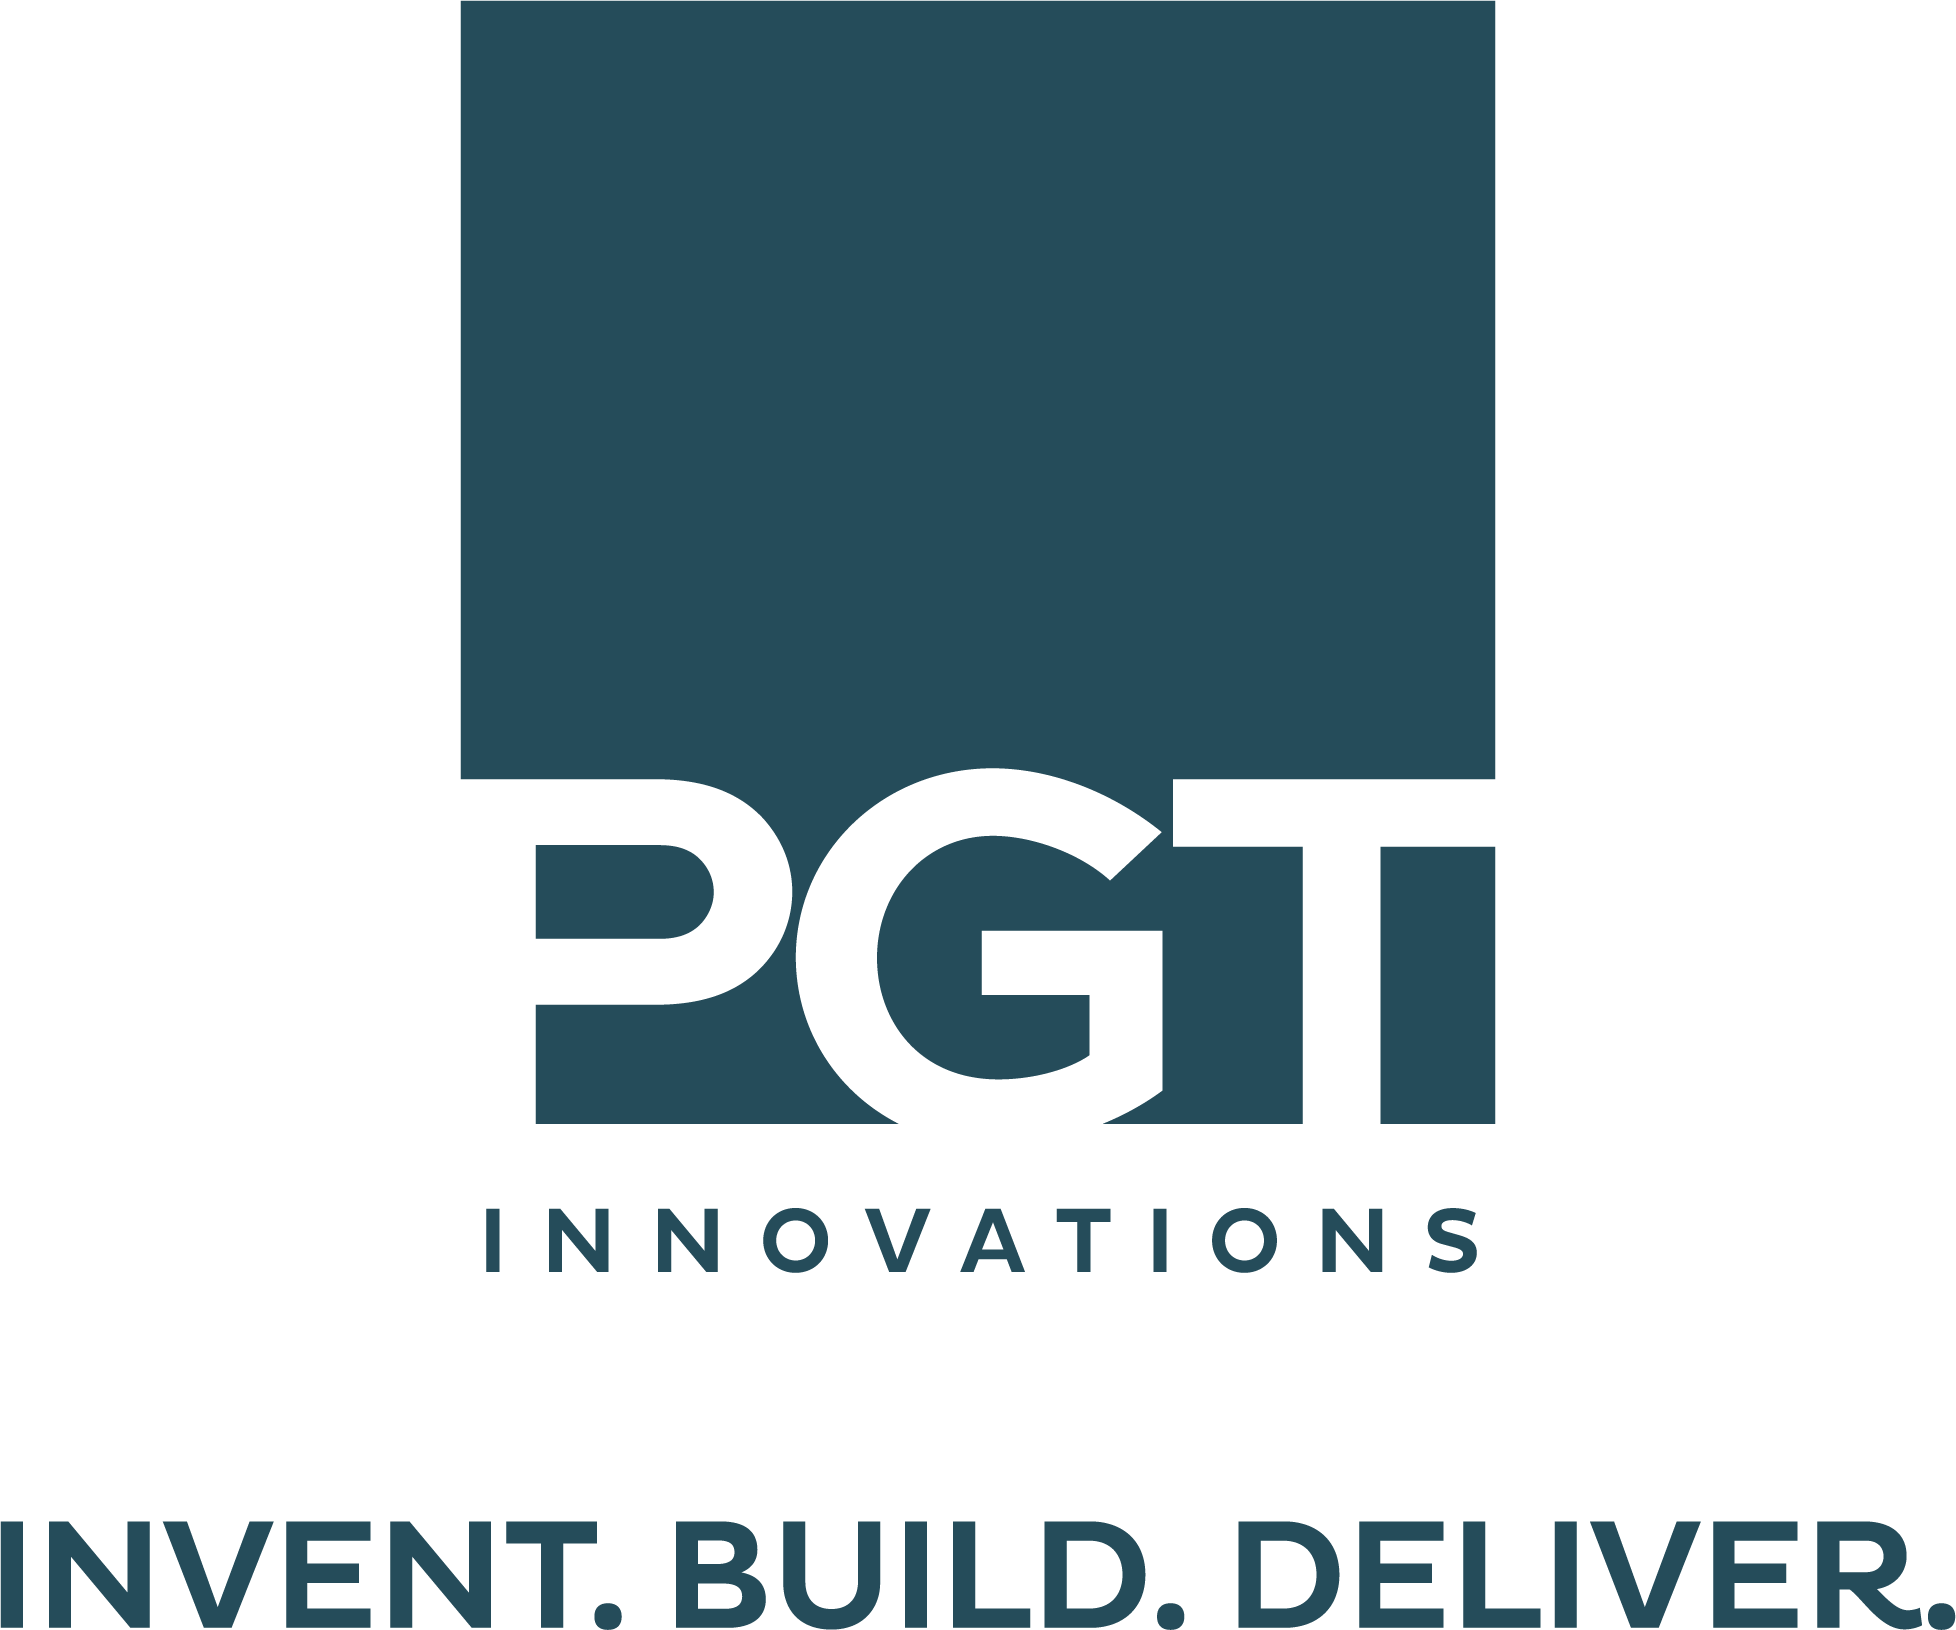 PGT Logo - PGT Innovations Food Drive. All Faiths Food Bank